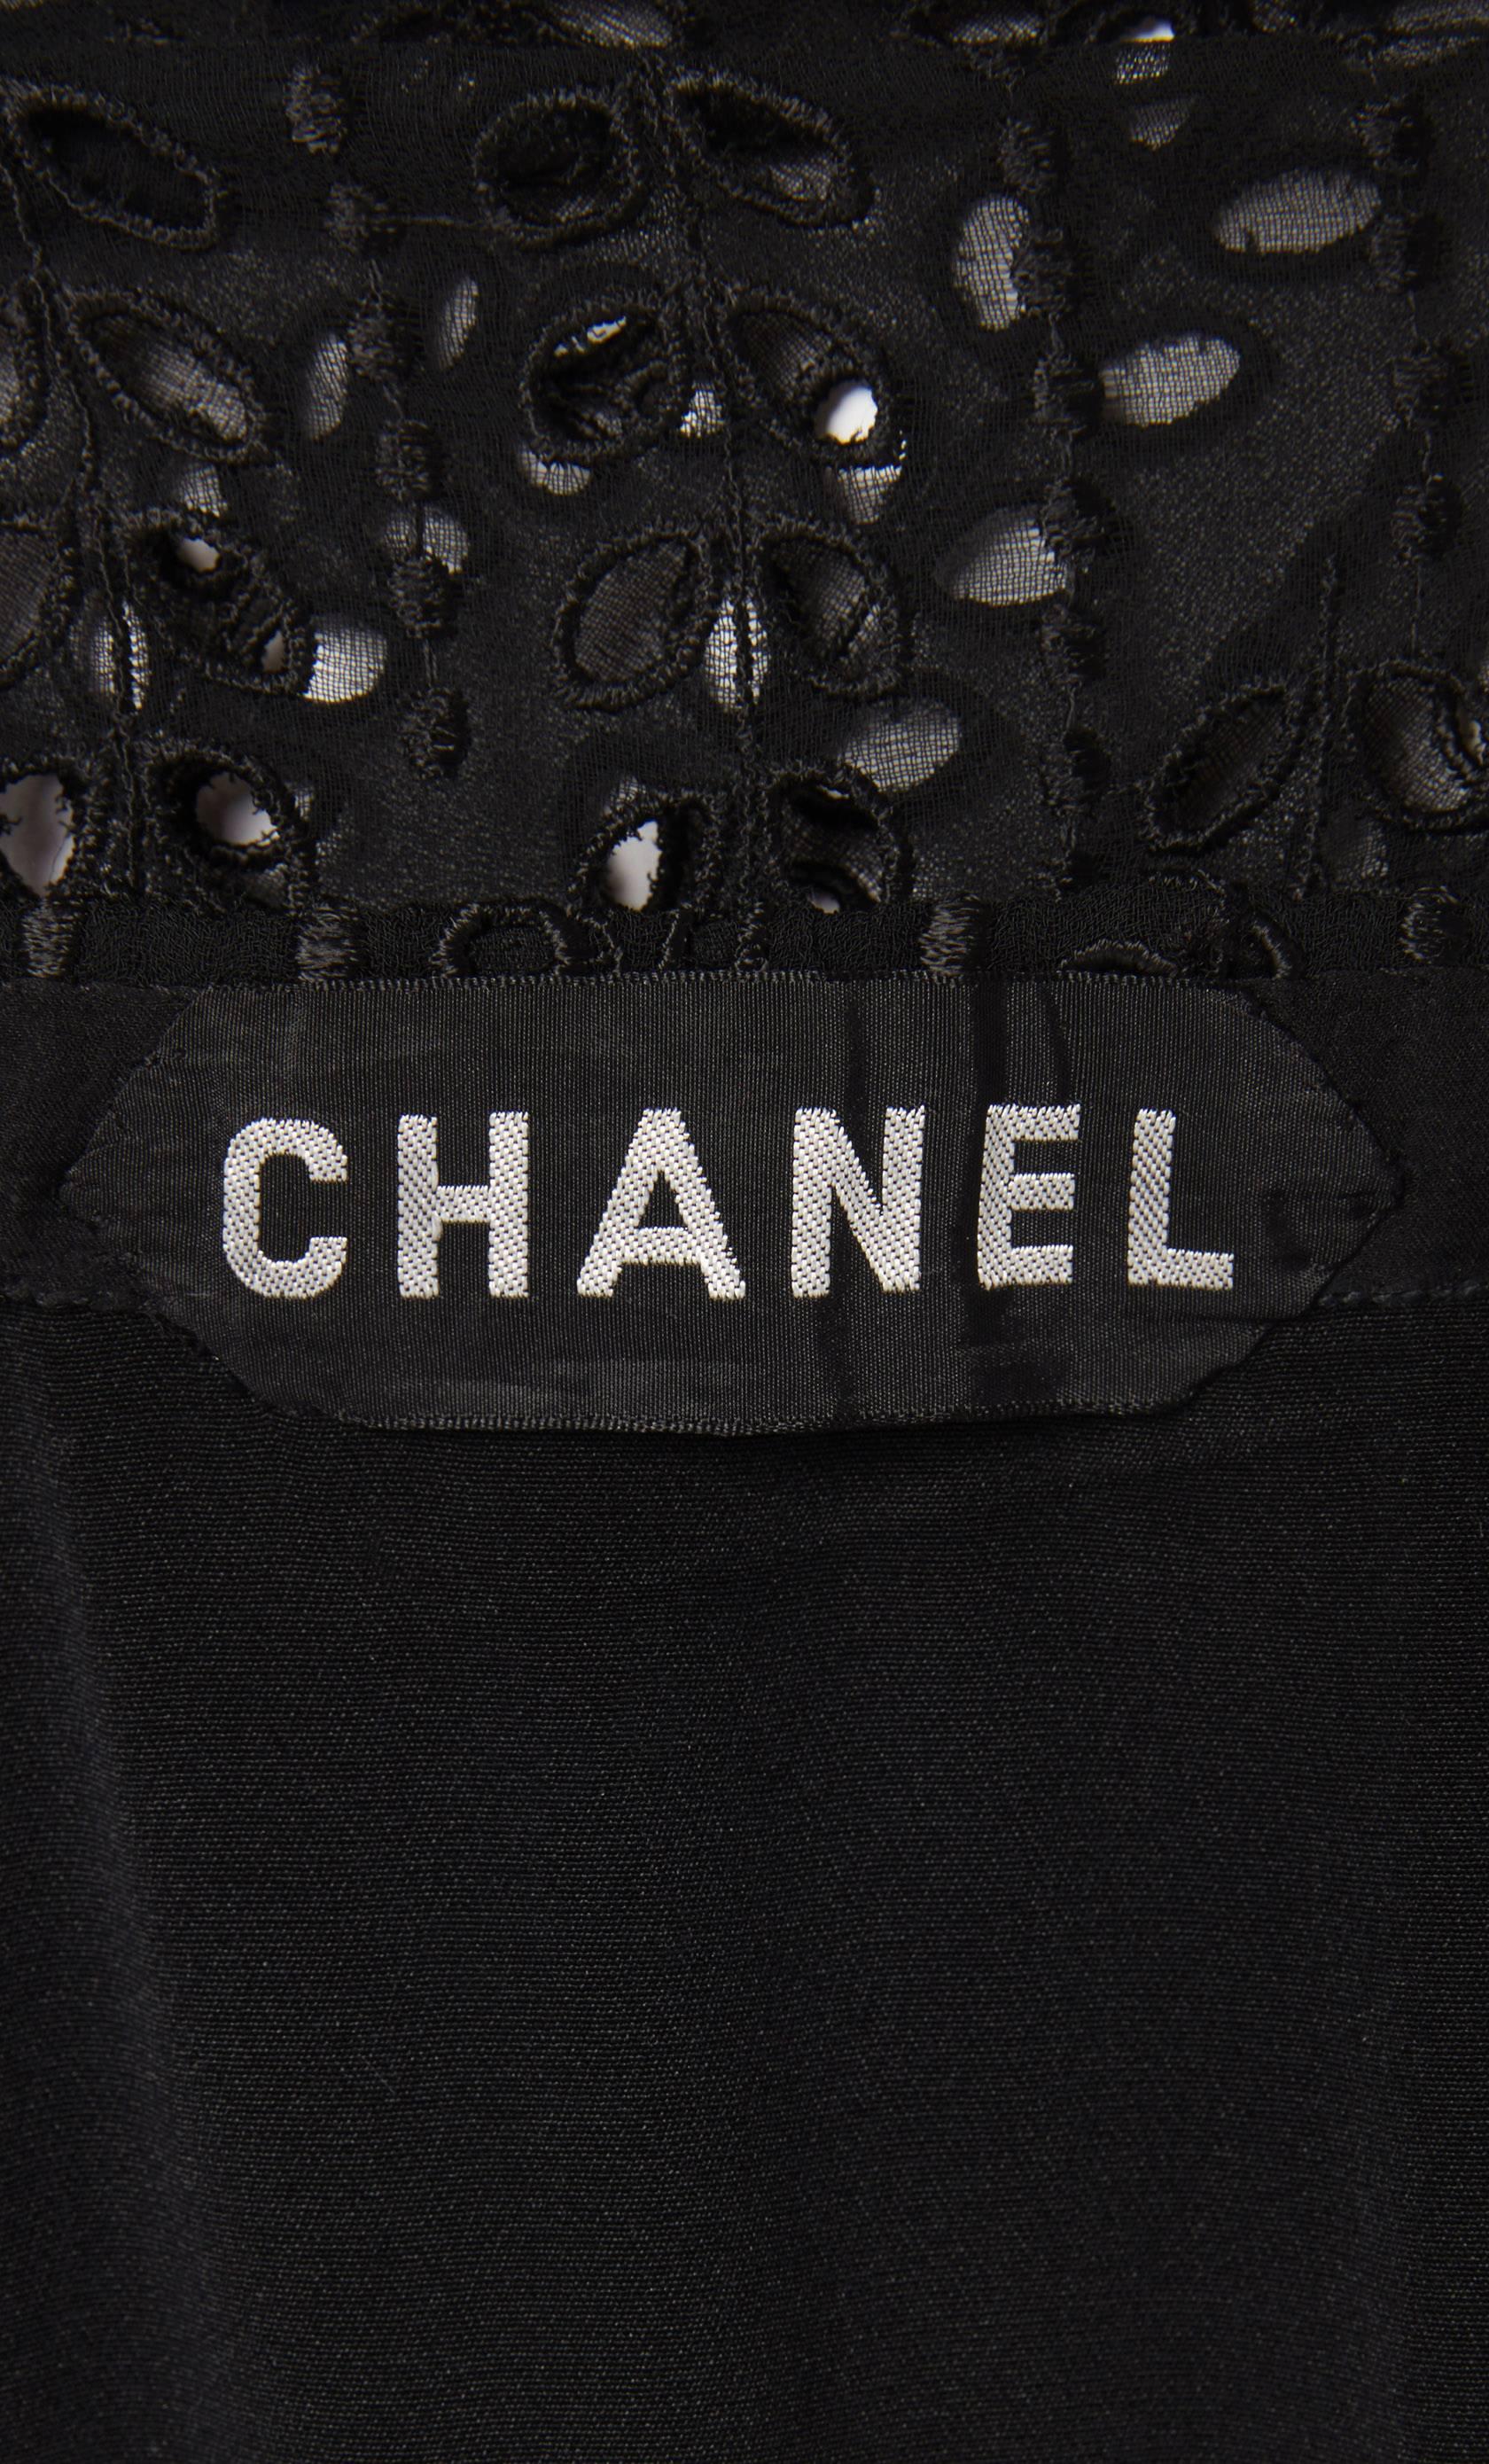 Women's Chanel haute couture black gown, circa 1974